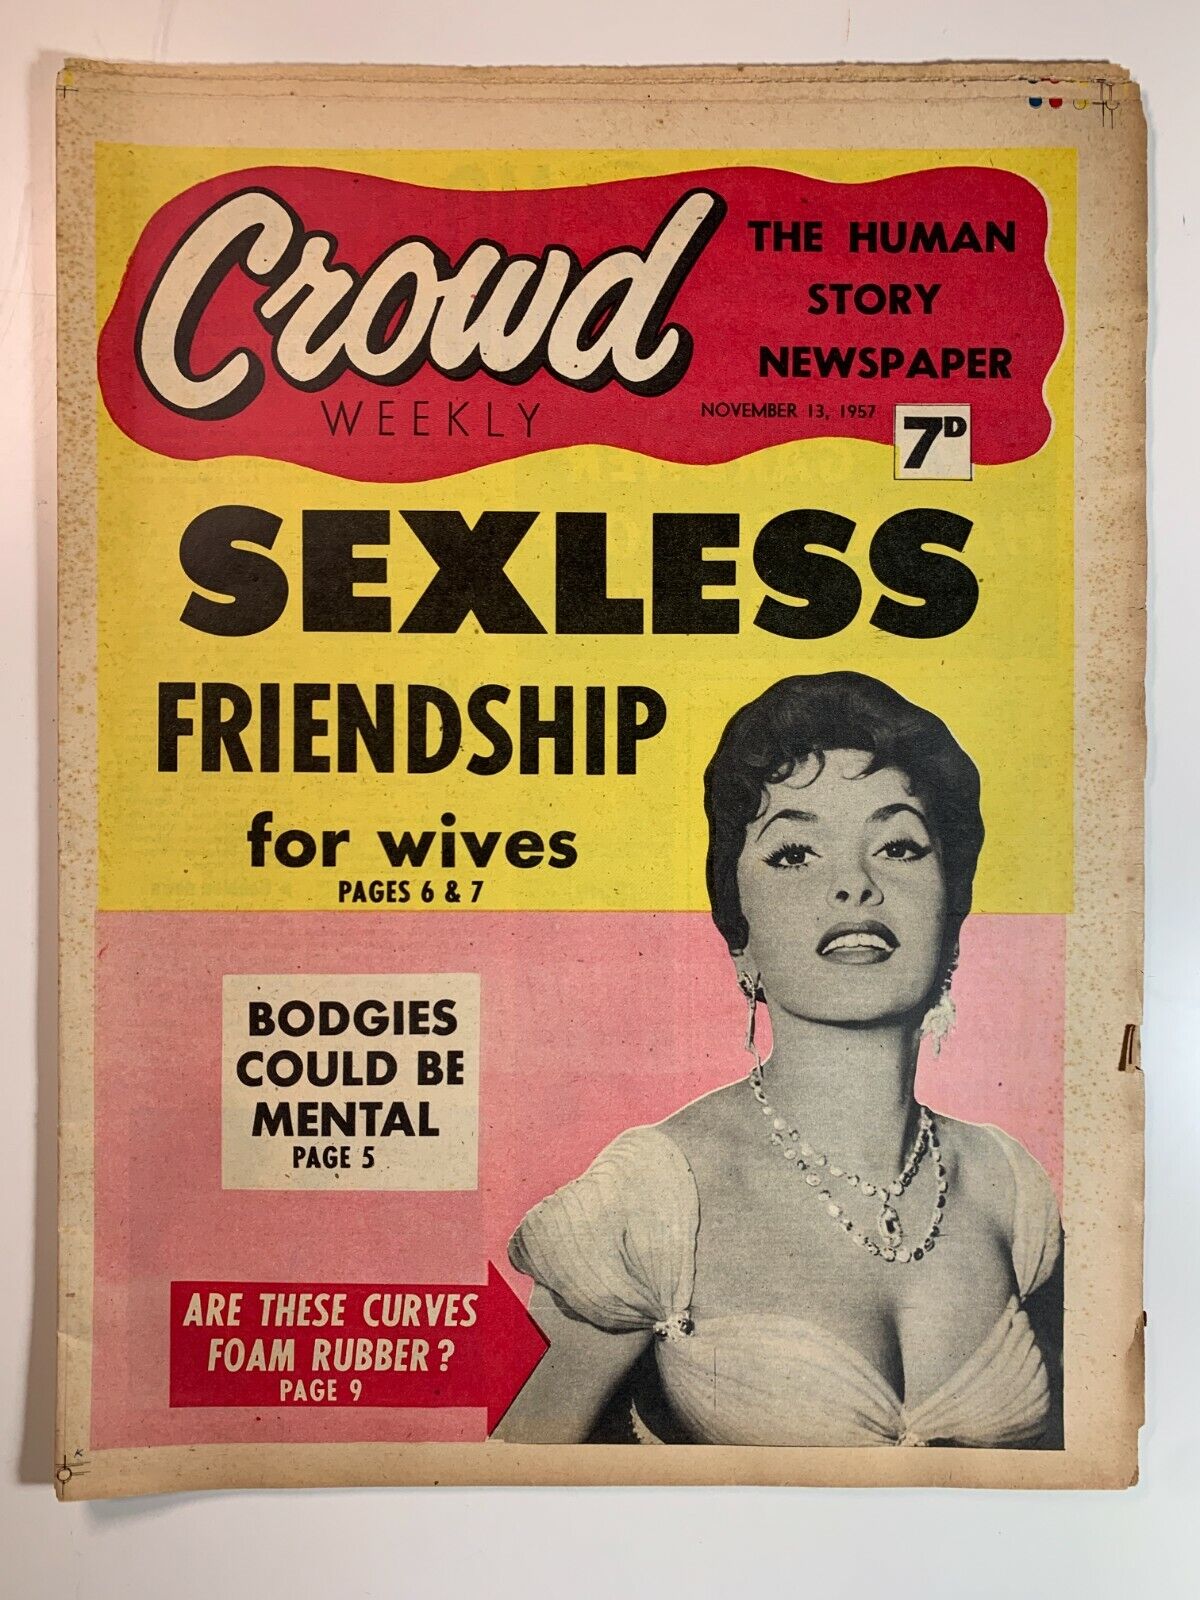 Vintage UK - Crowd Weekly - The Human Story Newspaper 13 November 1957